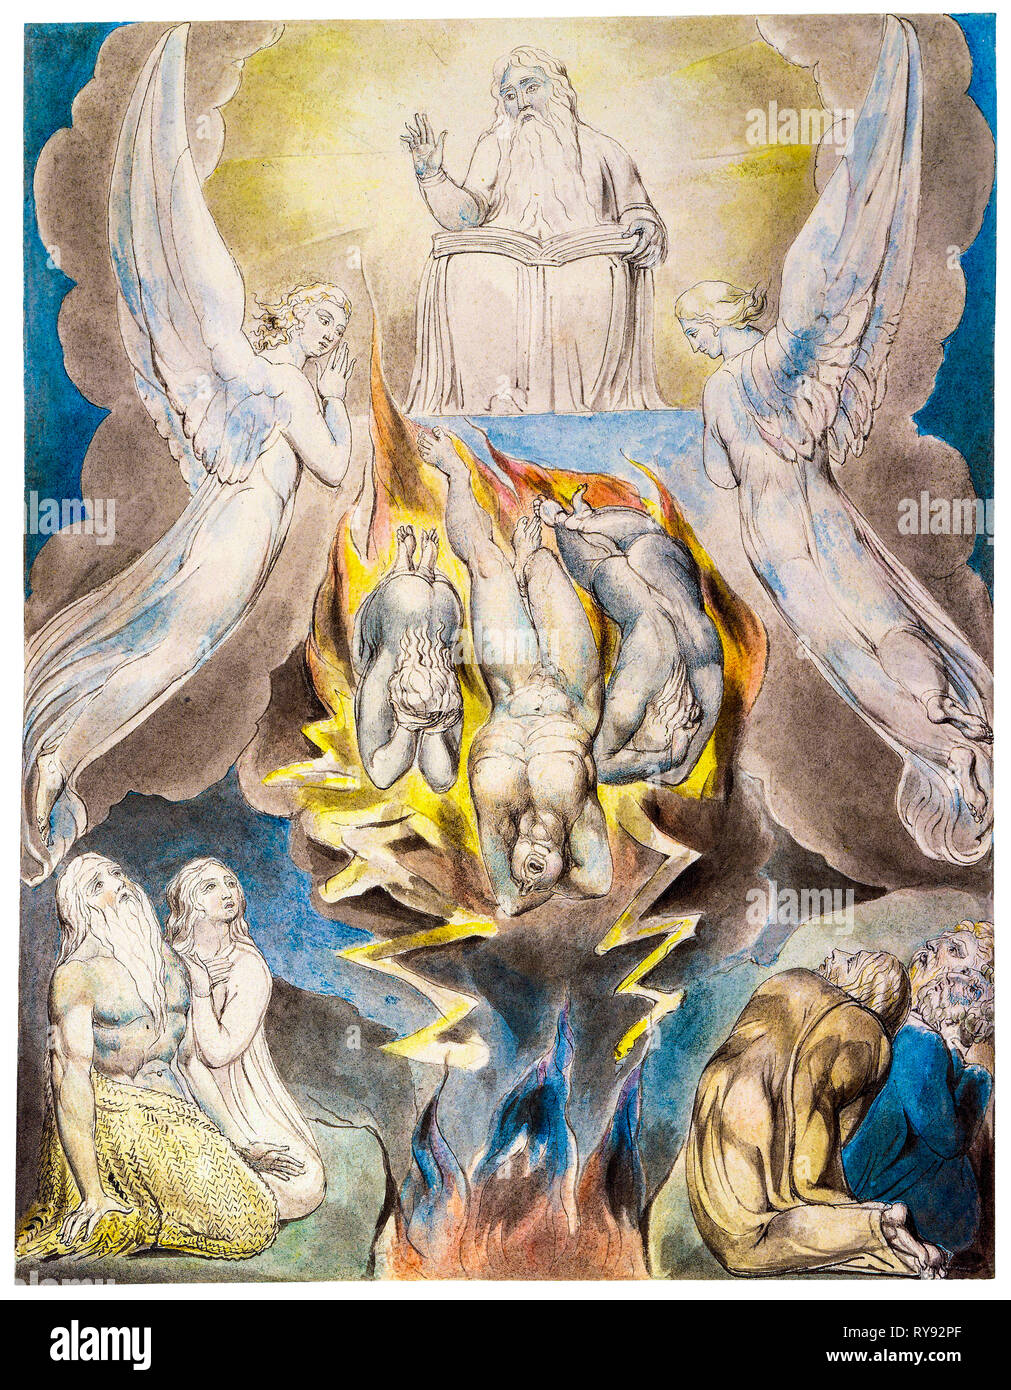 La chute de Satan, peinture par William Blake, 1805, plume et encre avec aquarelle, illustration Banque D'Images